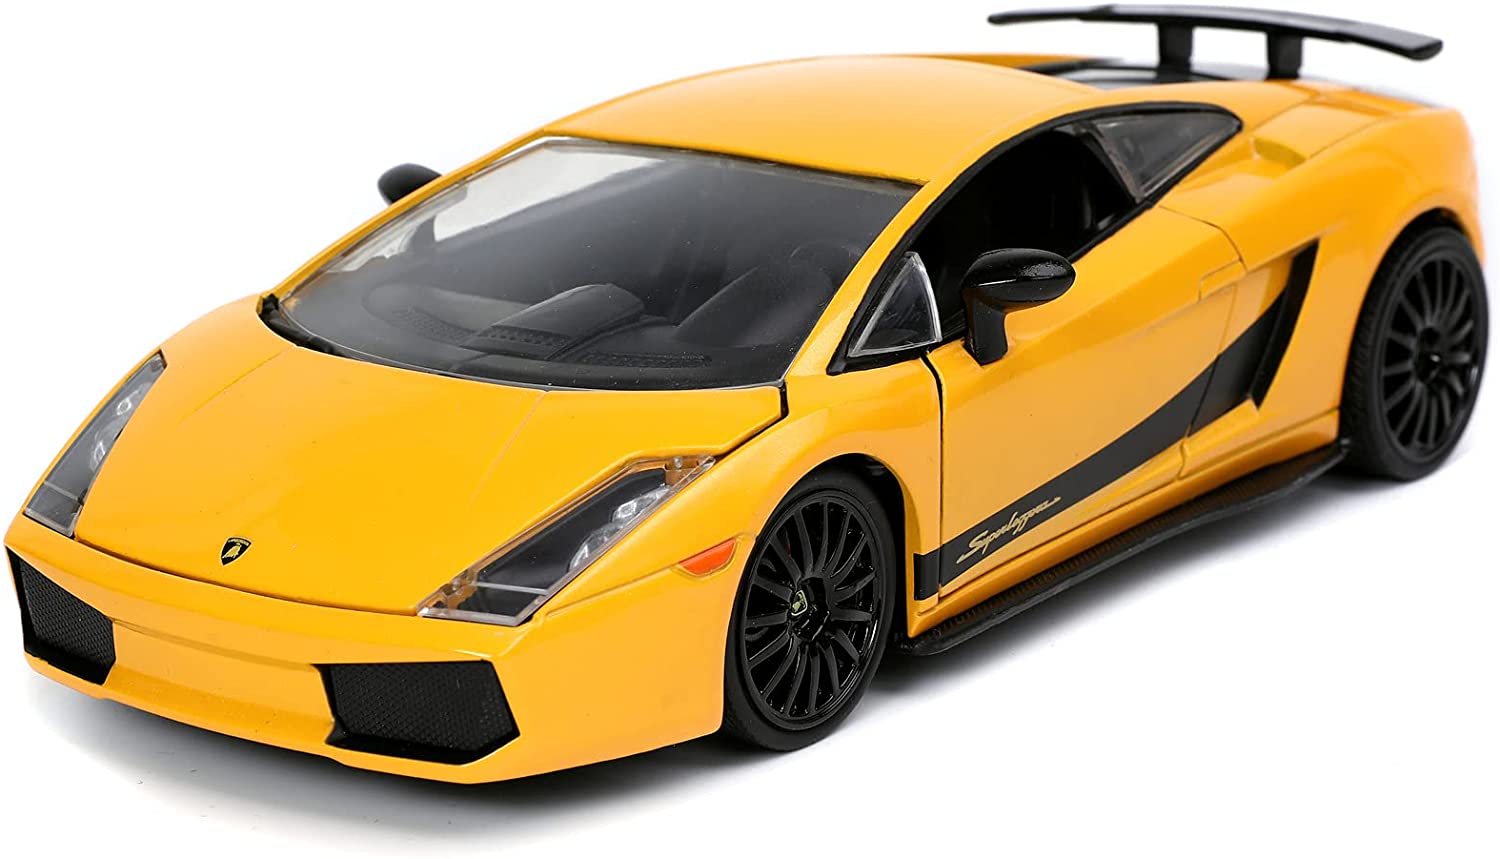 Fast & Furious Lamborghini Gallardo Superleggera